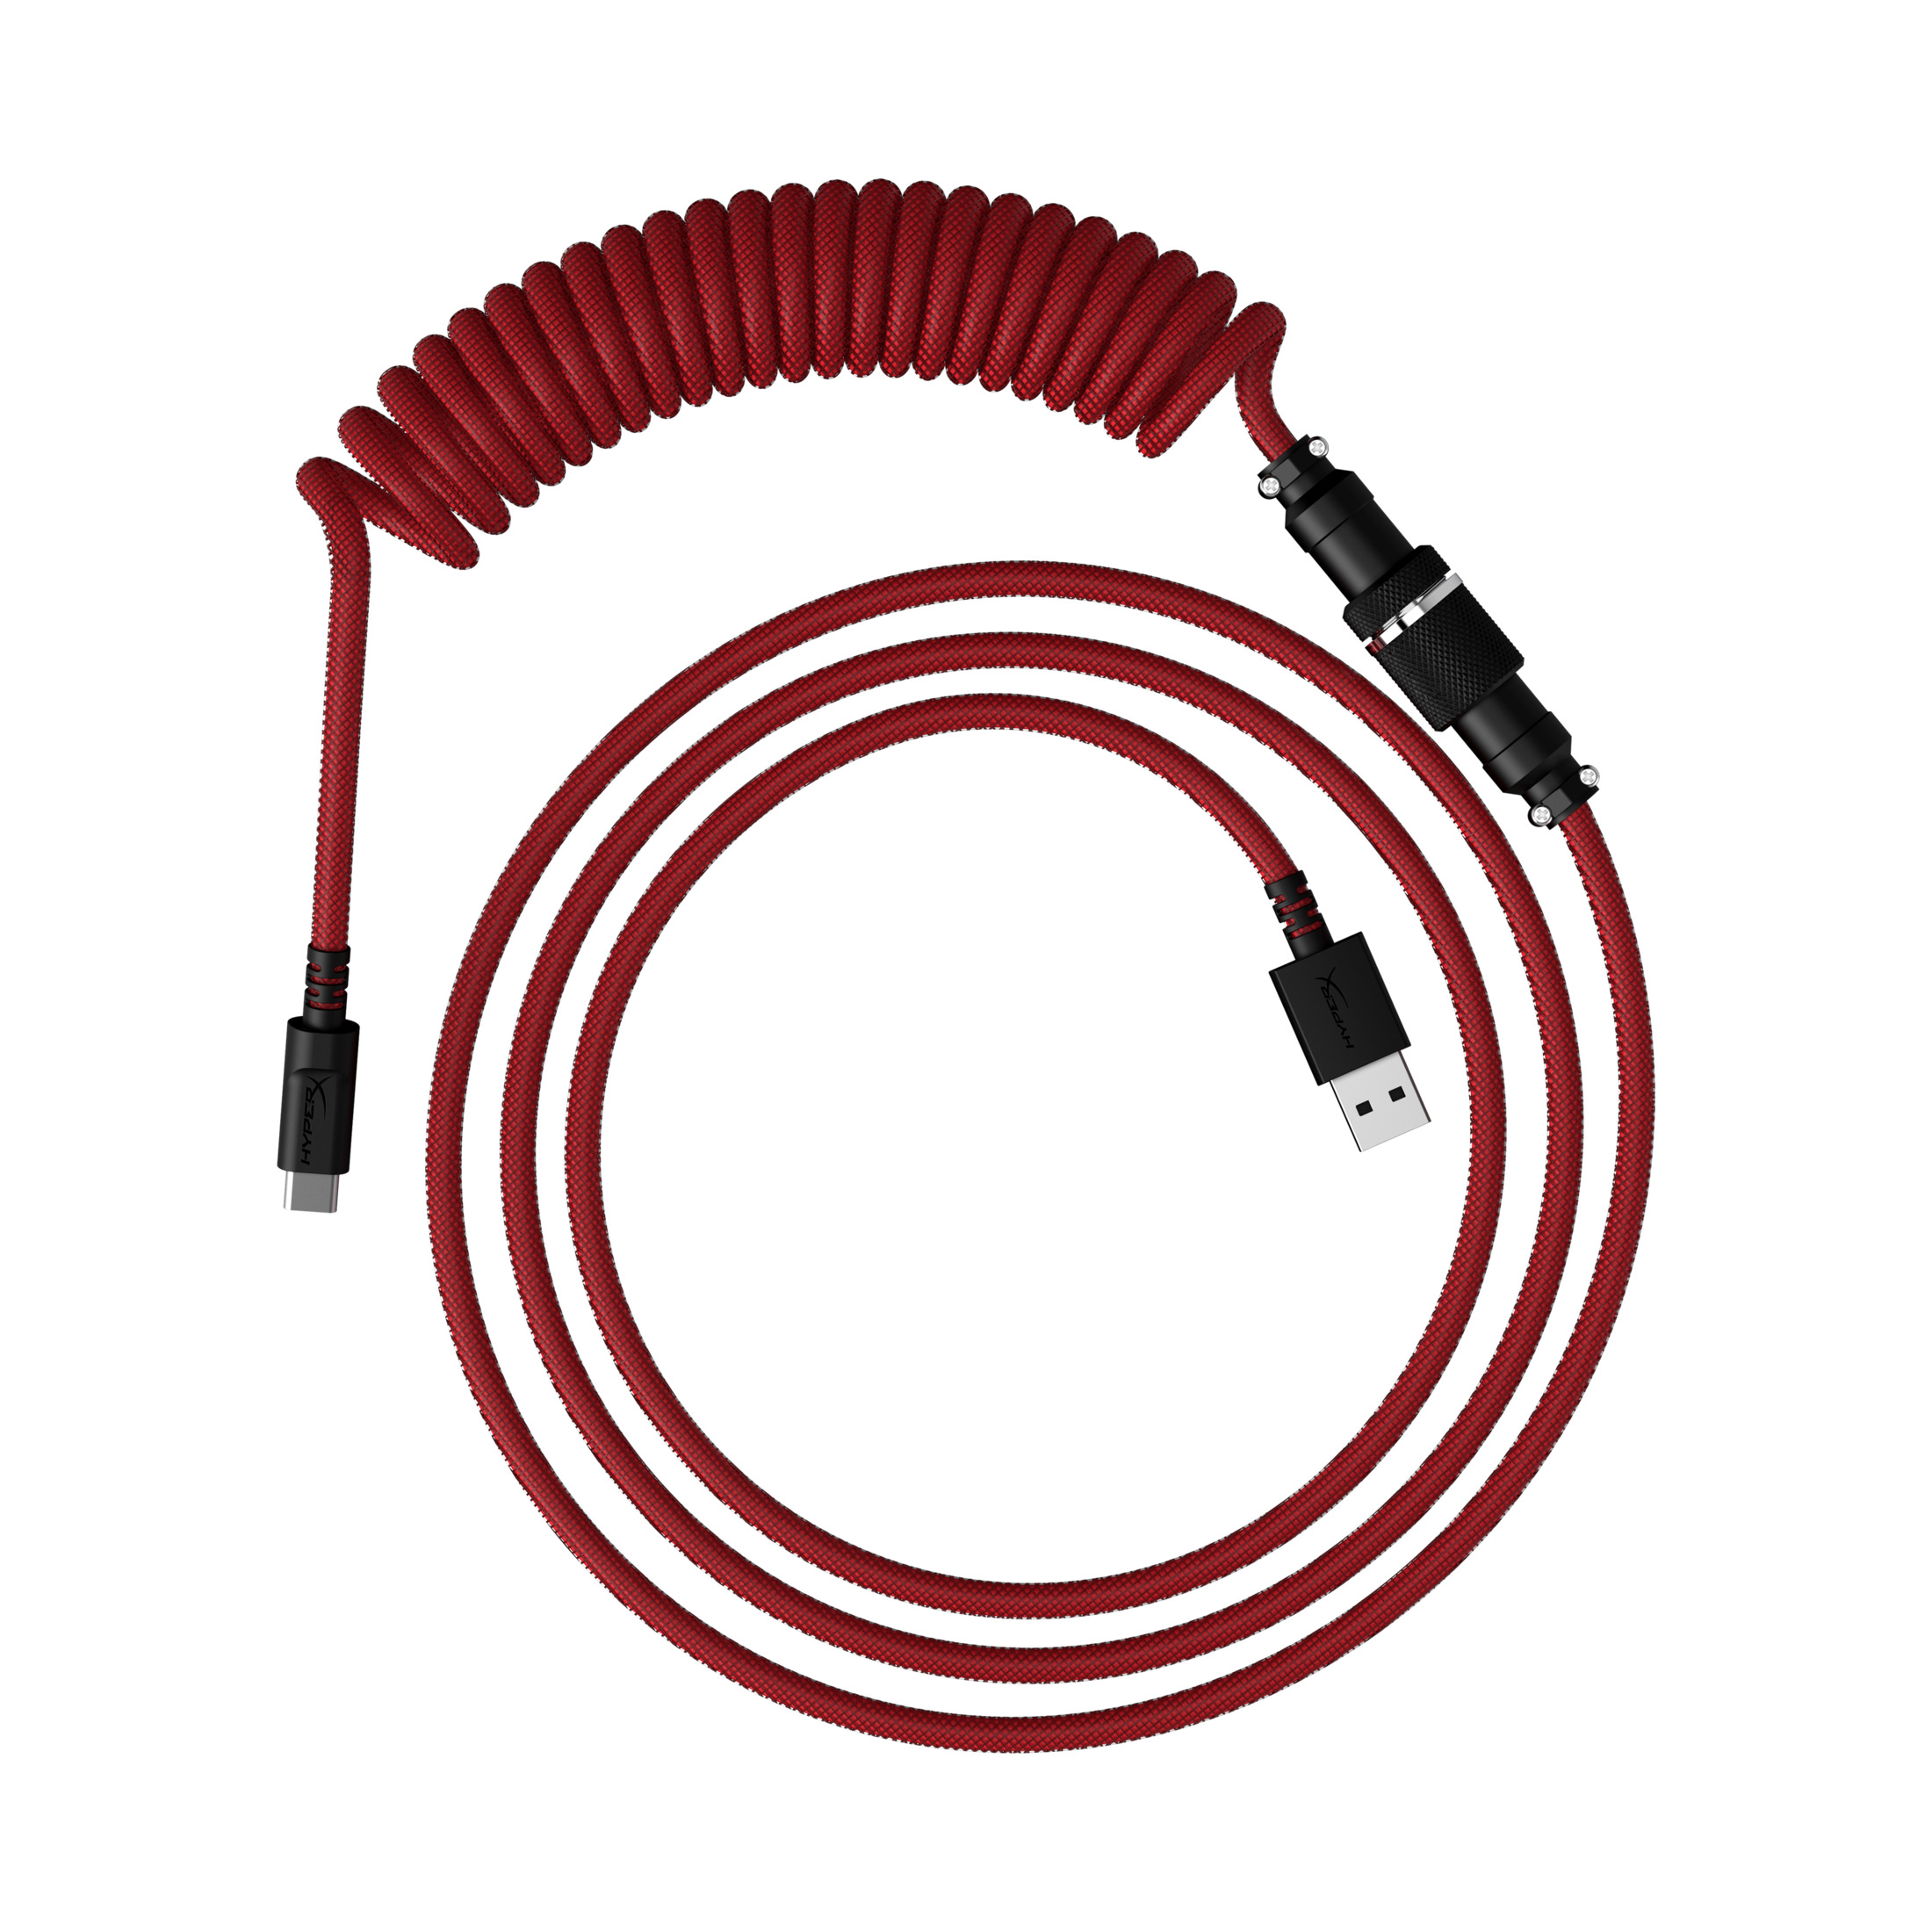 Spiralkabel für Rot-schwarz Tastatur, CBL die RED-BLK, USBC 6J677AA COILED HYPERX